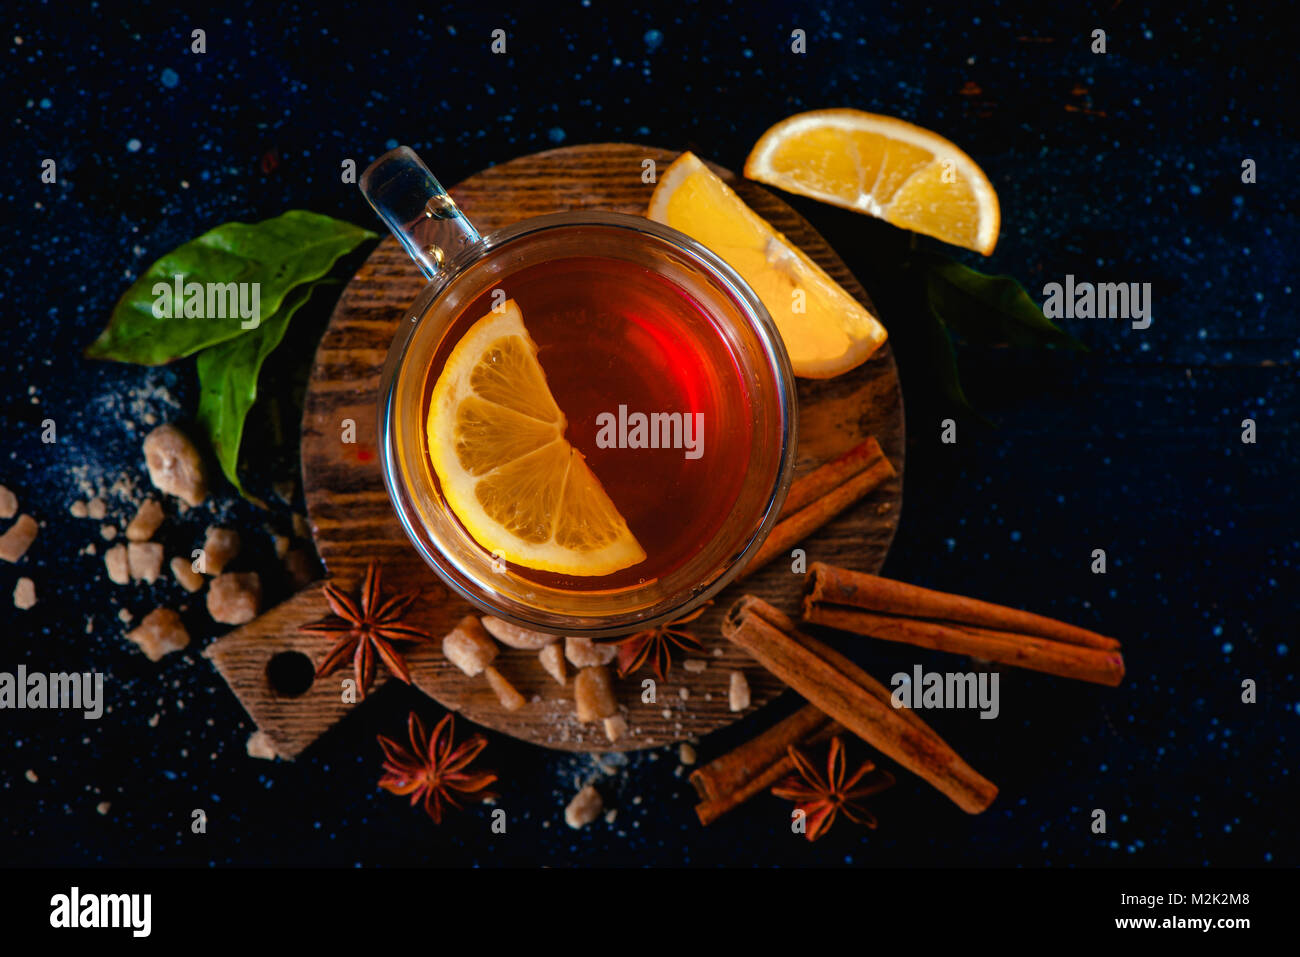 Dunkle Stillleben mit Wasserglas, Zitronenscheiben, Anis Sterne, Zucker, Tee und Zimt auf einem dunklen Hintergrund. Herbst Tee Tasse von oben. Kopieren Sie Platz. Stockfoto